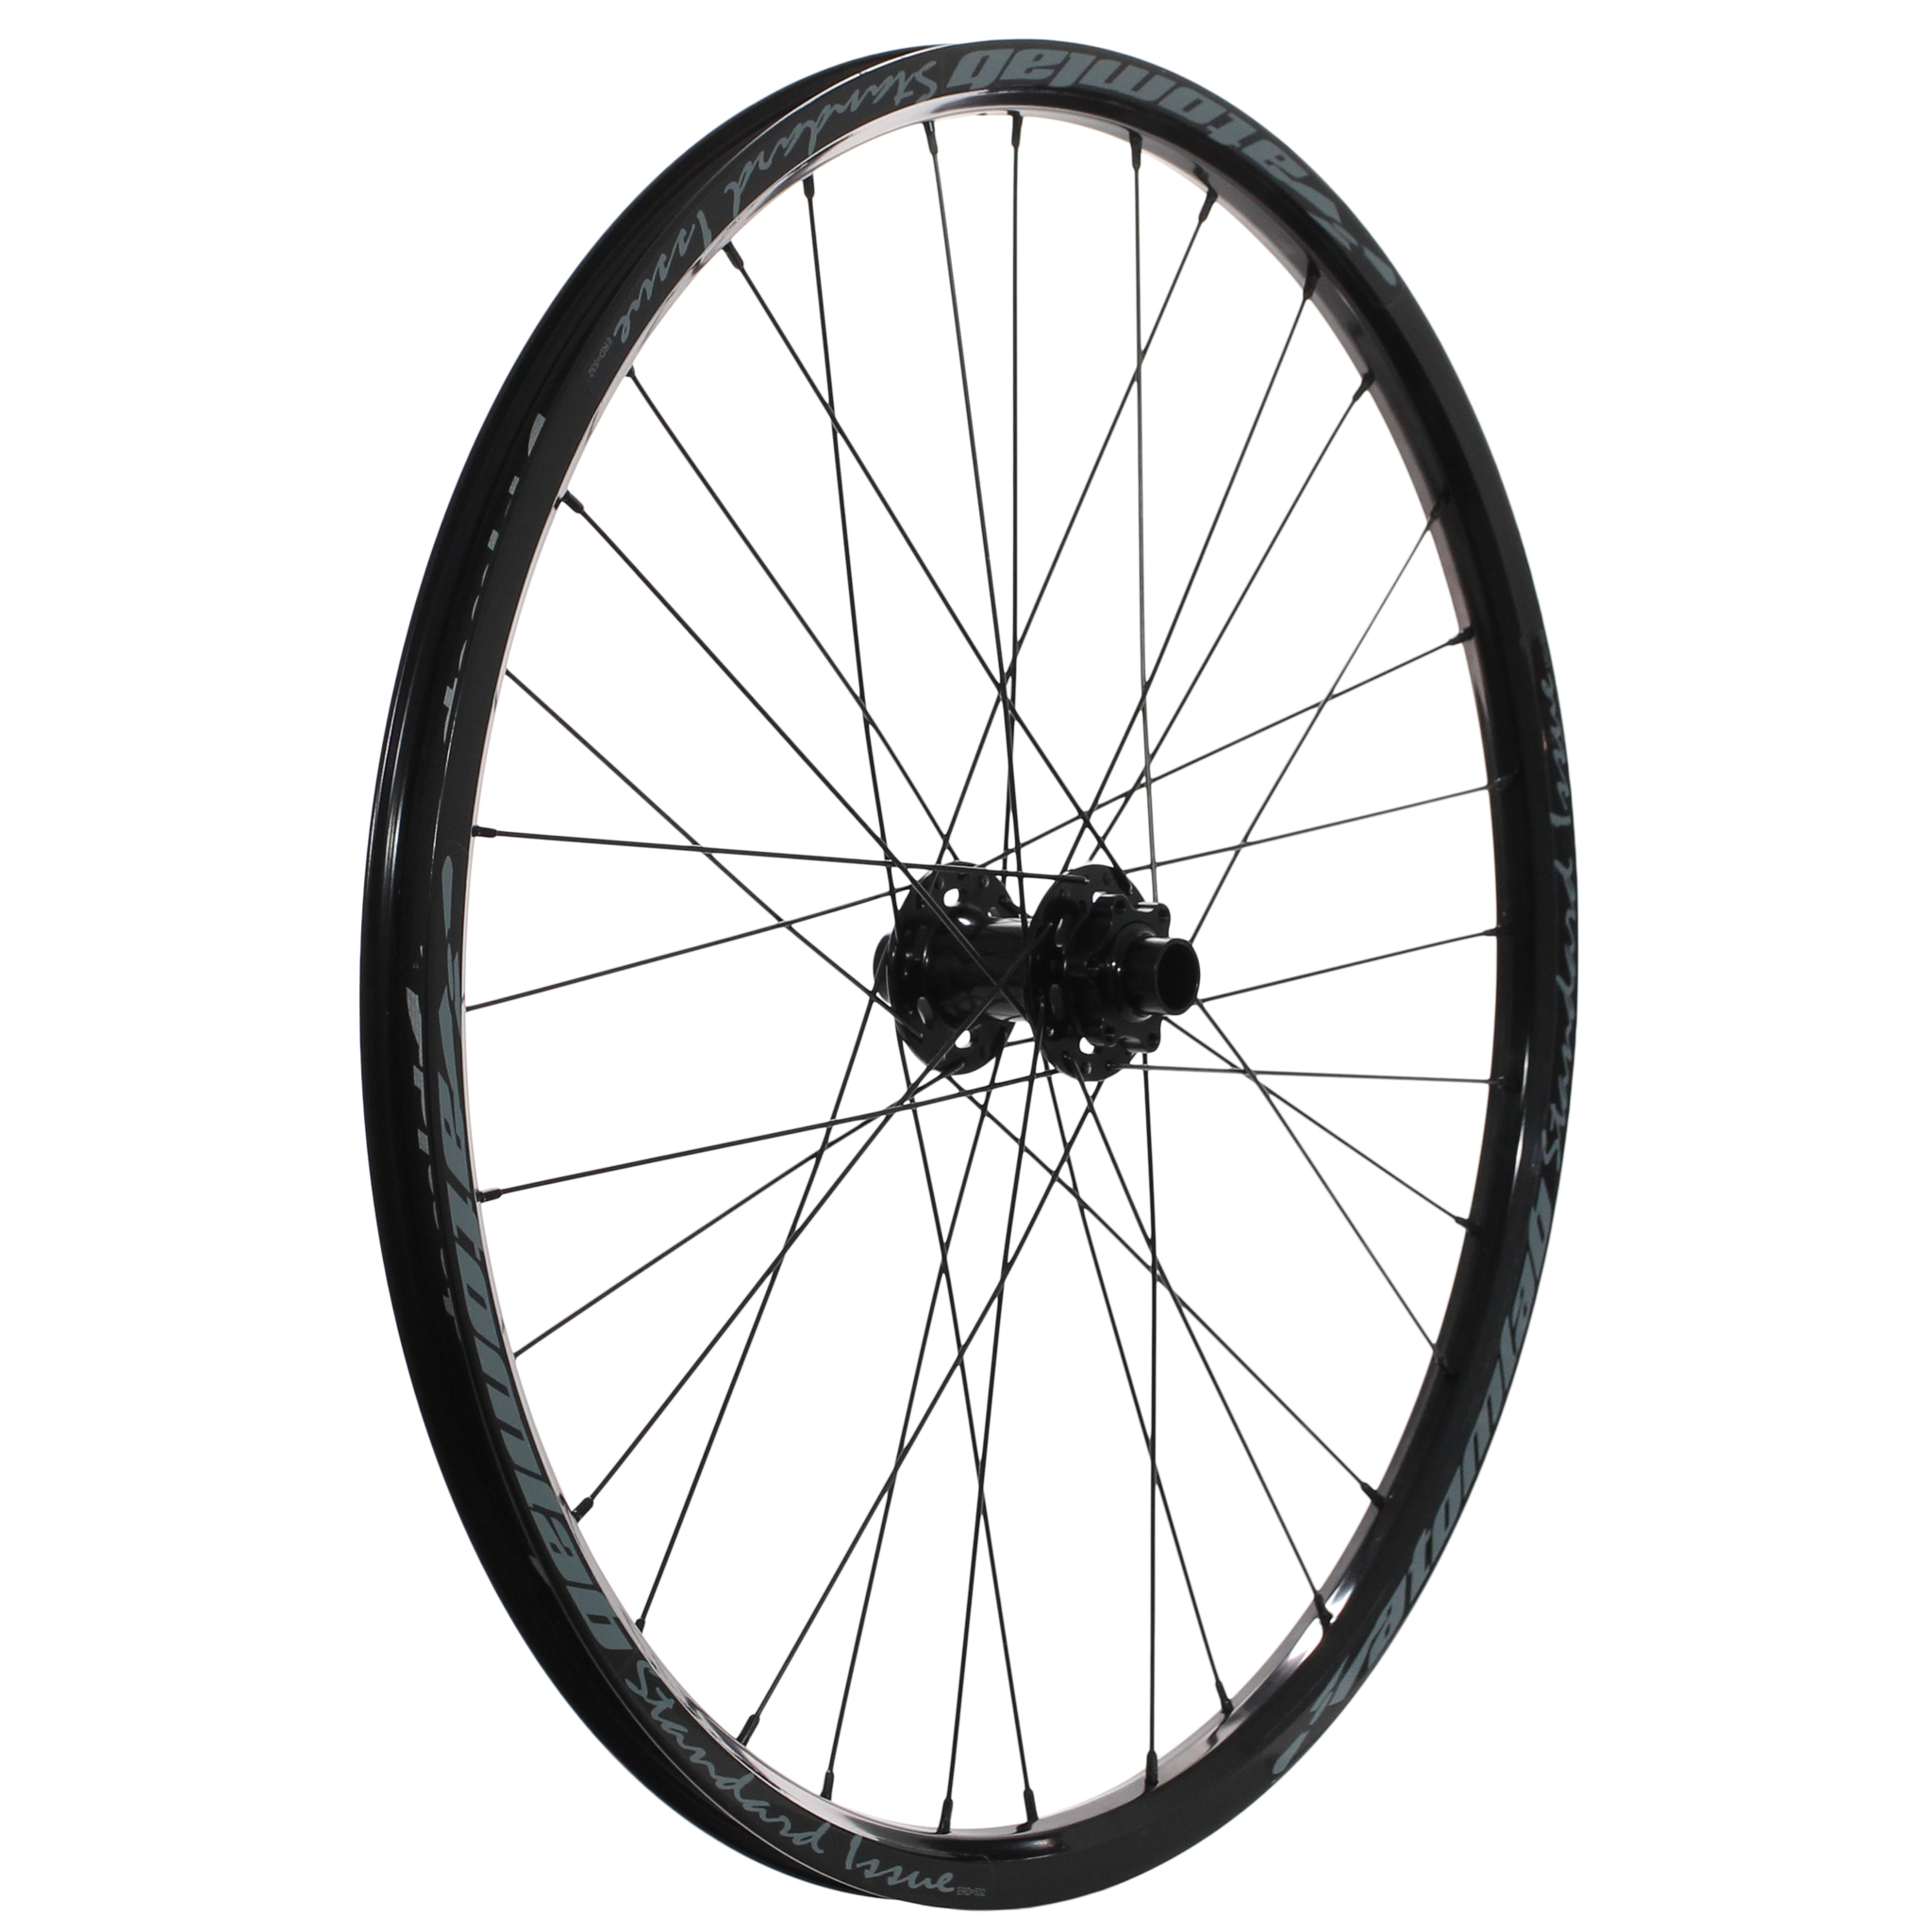 Atomlab Standard Issue 26" Front Wheel, 20x110 32h Black